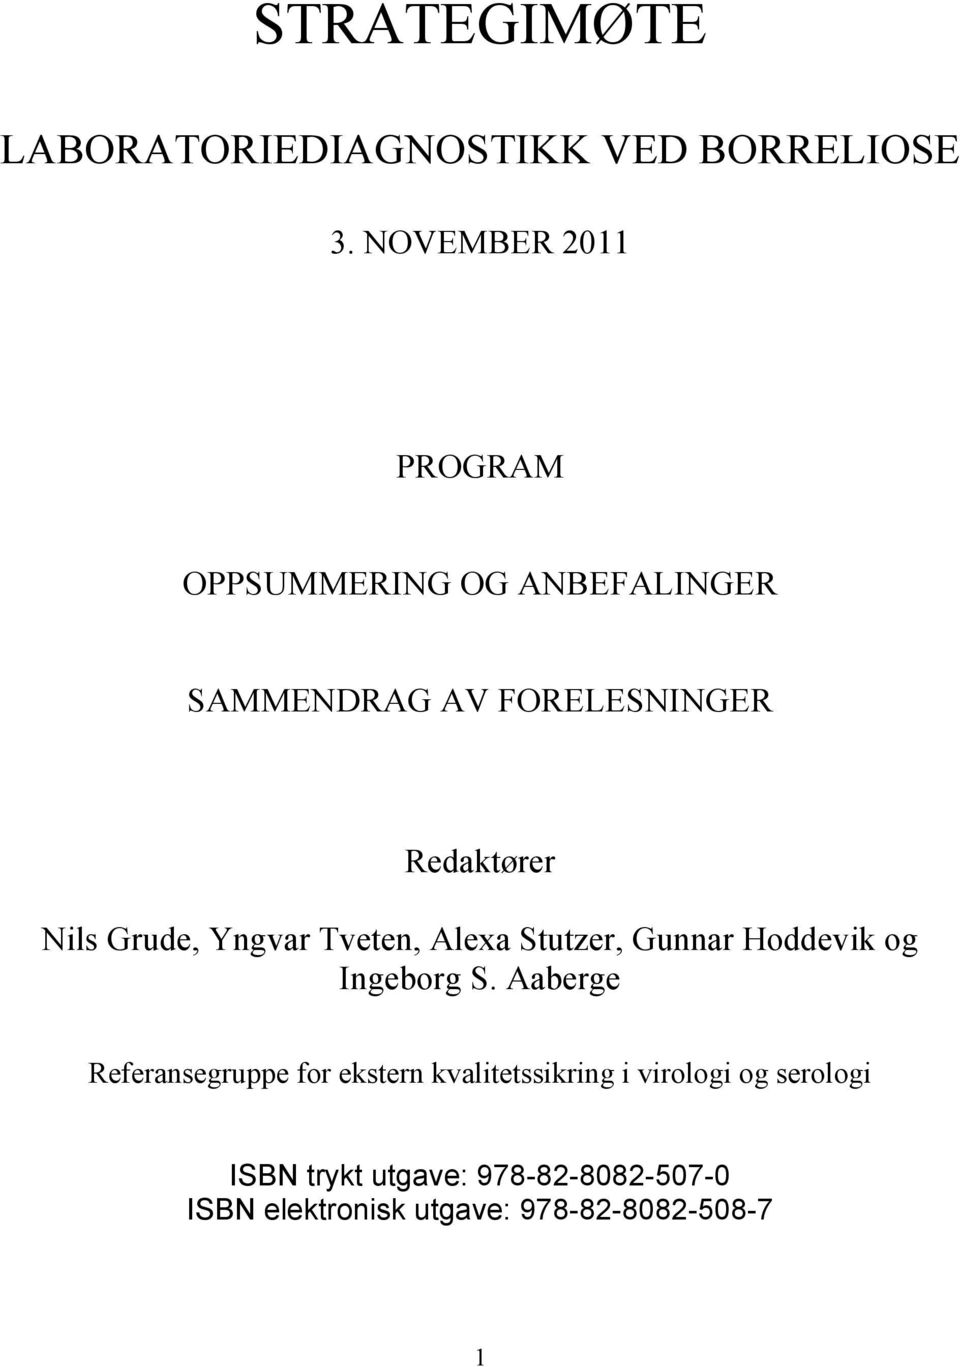 Nils Grude, Yngvar Tveten, Alexa Stutzer, Gunnar Hoddevik og Ingeborg S.